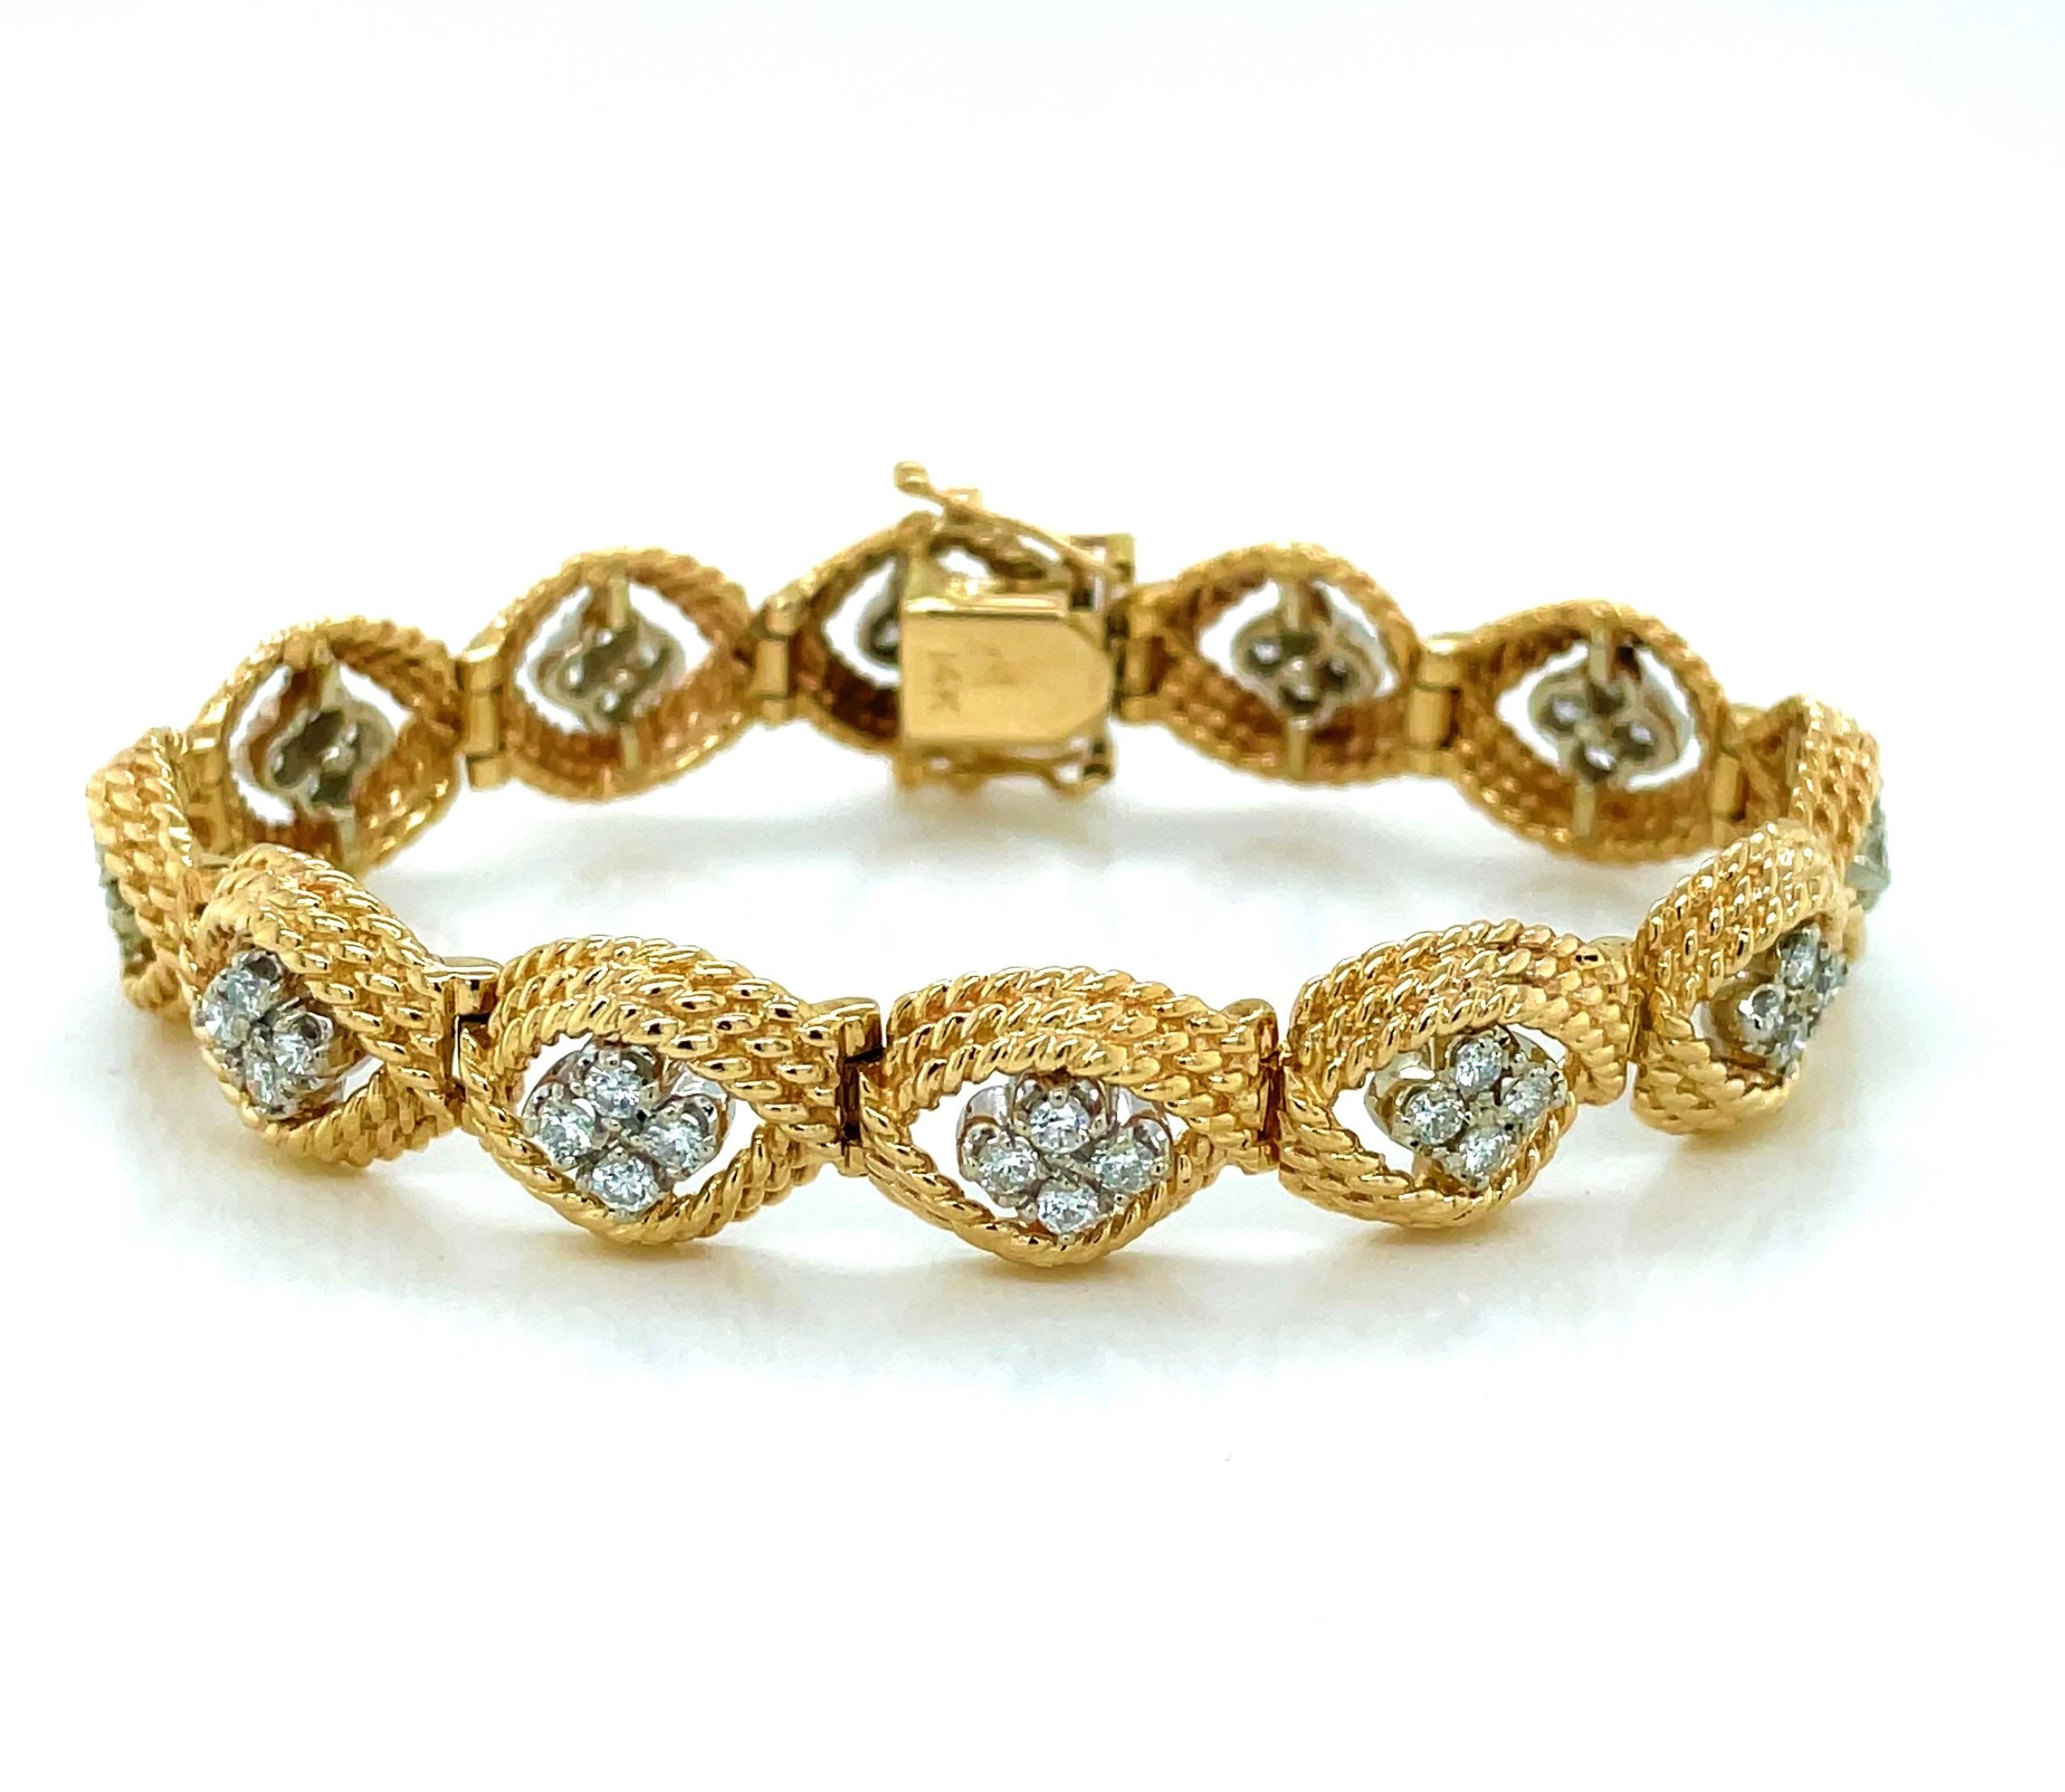 Un total de 2,4 carats de diamants H/VS illumine la longueur de cet élégant bracelet habillé en or jaune 14 carats. Présentées en quads, douze grappes de pierres précieuses en diamant de 0,05 carat flottent au milieu de torsades d'or de forme ovale